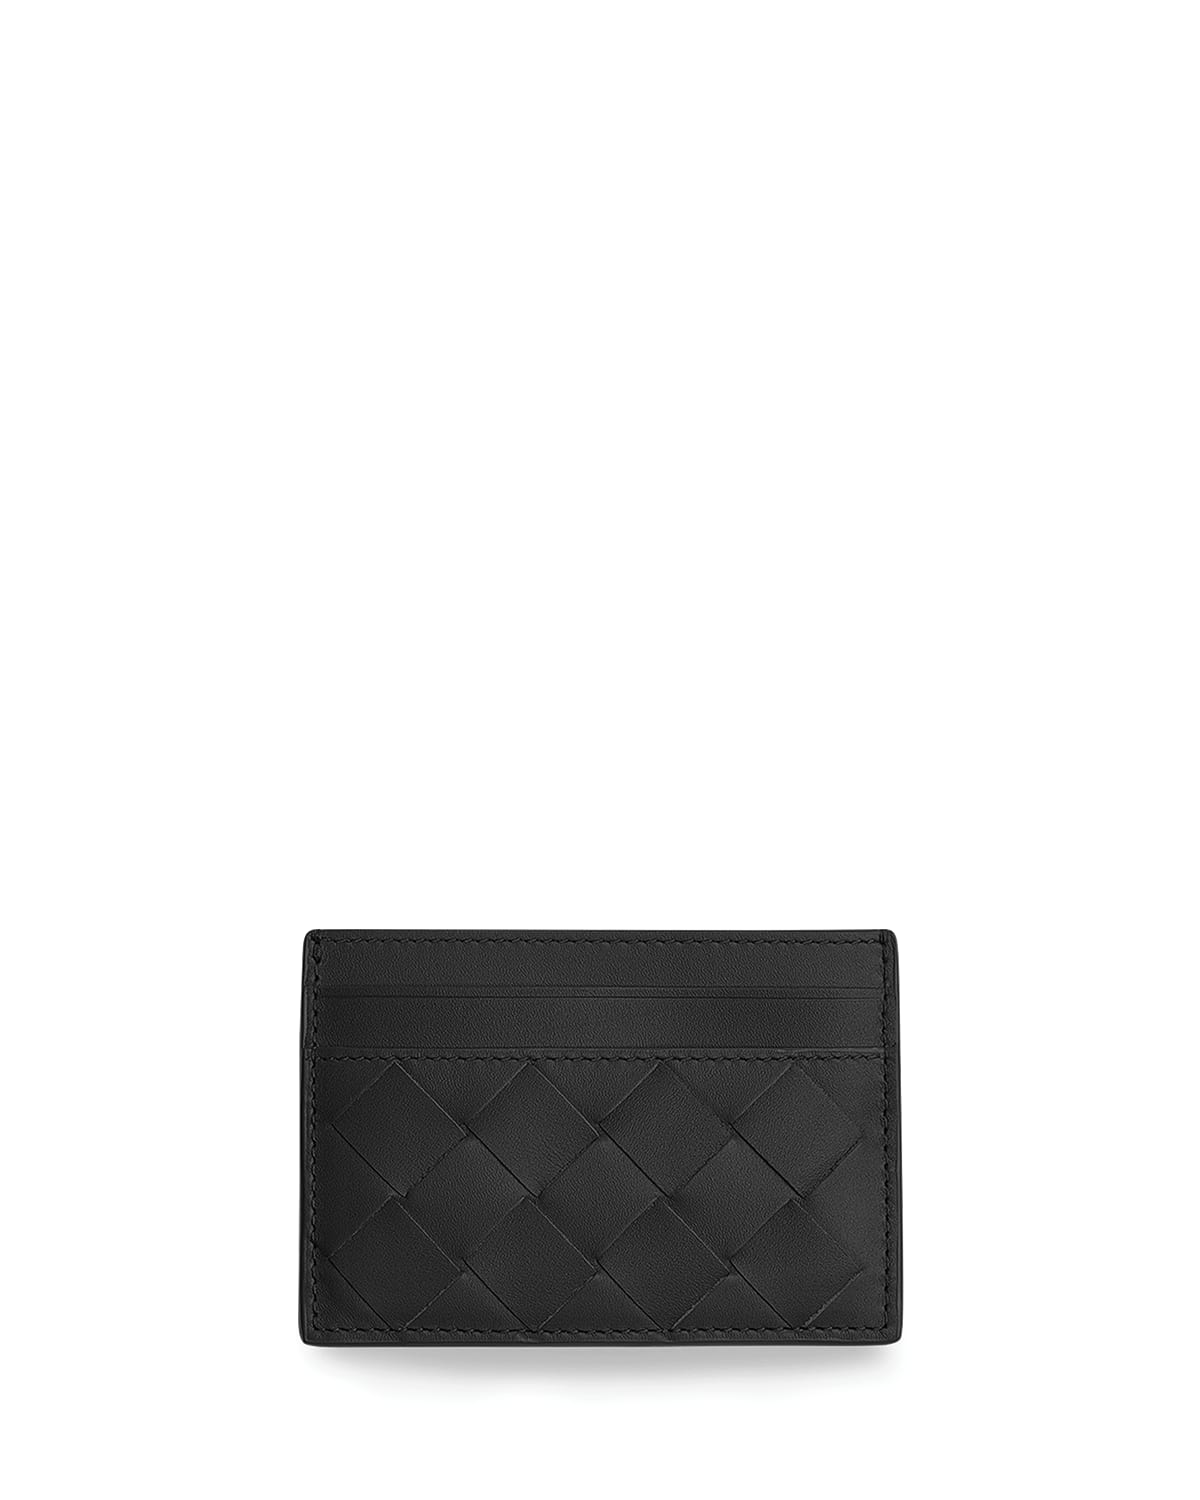 Bottega Veneta Card Case | Neiman Marcus | Bottega Veneta Card Holder